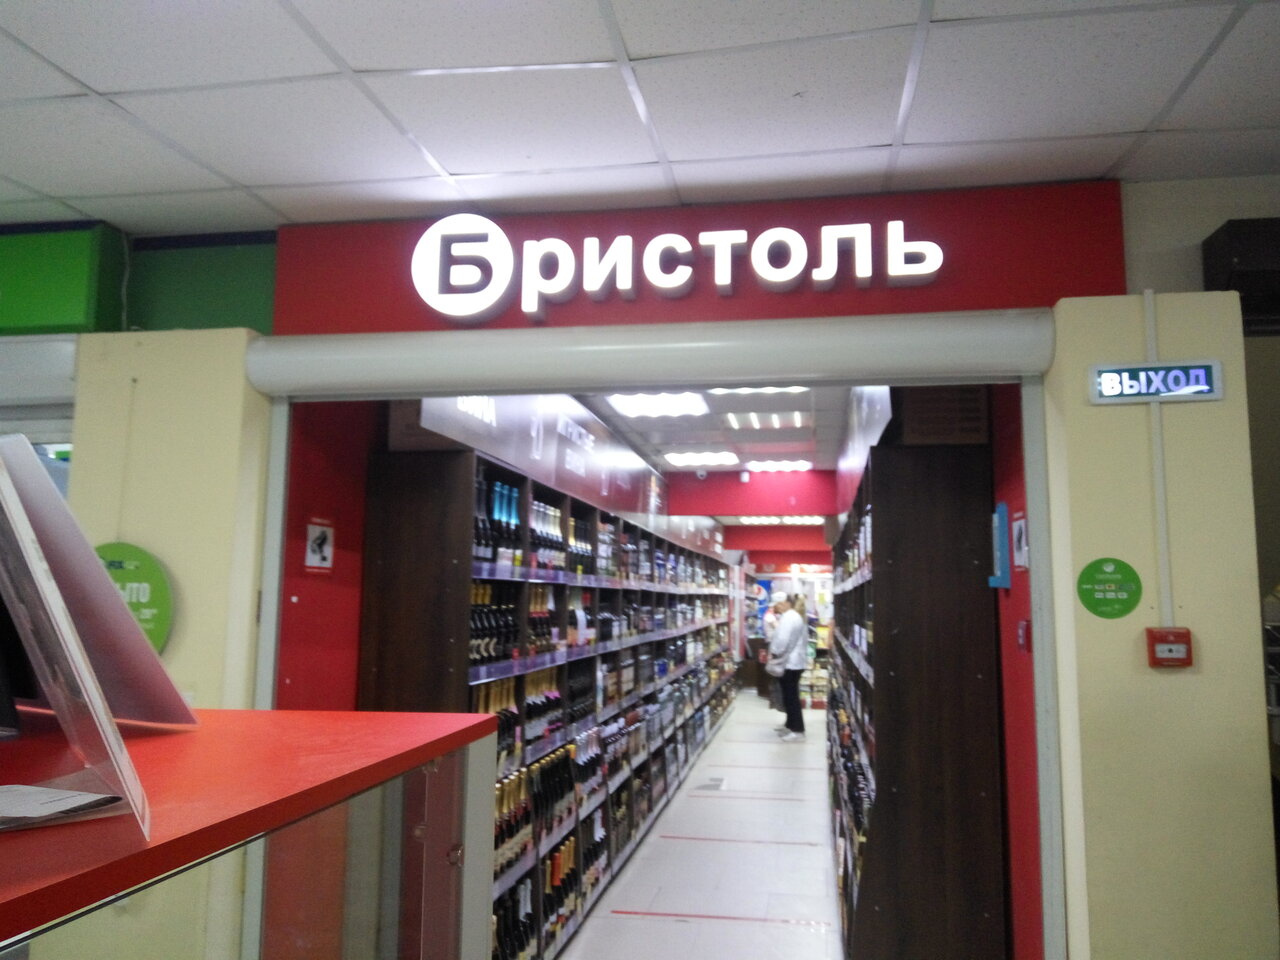 Бристоль Смоленск Адреса Магазинов